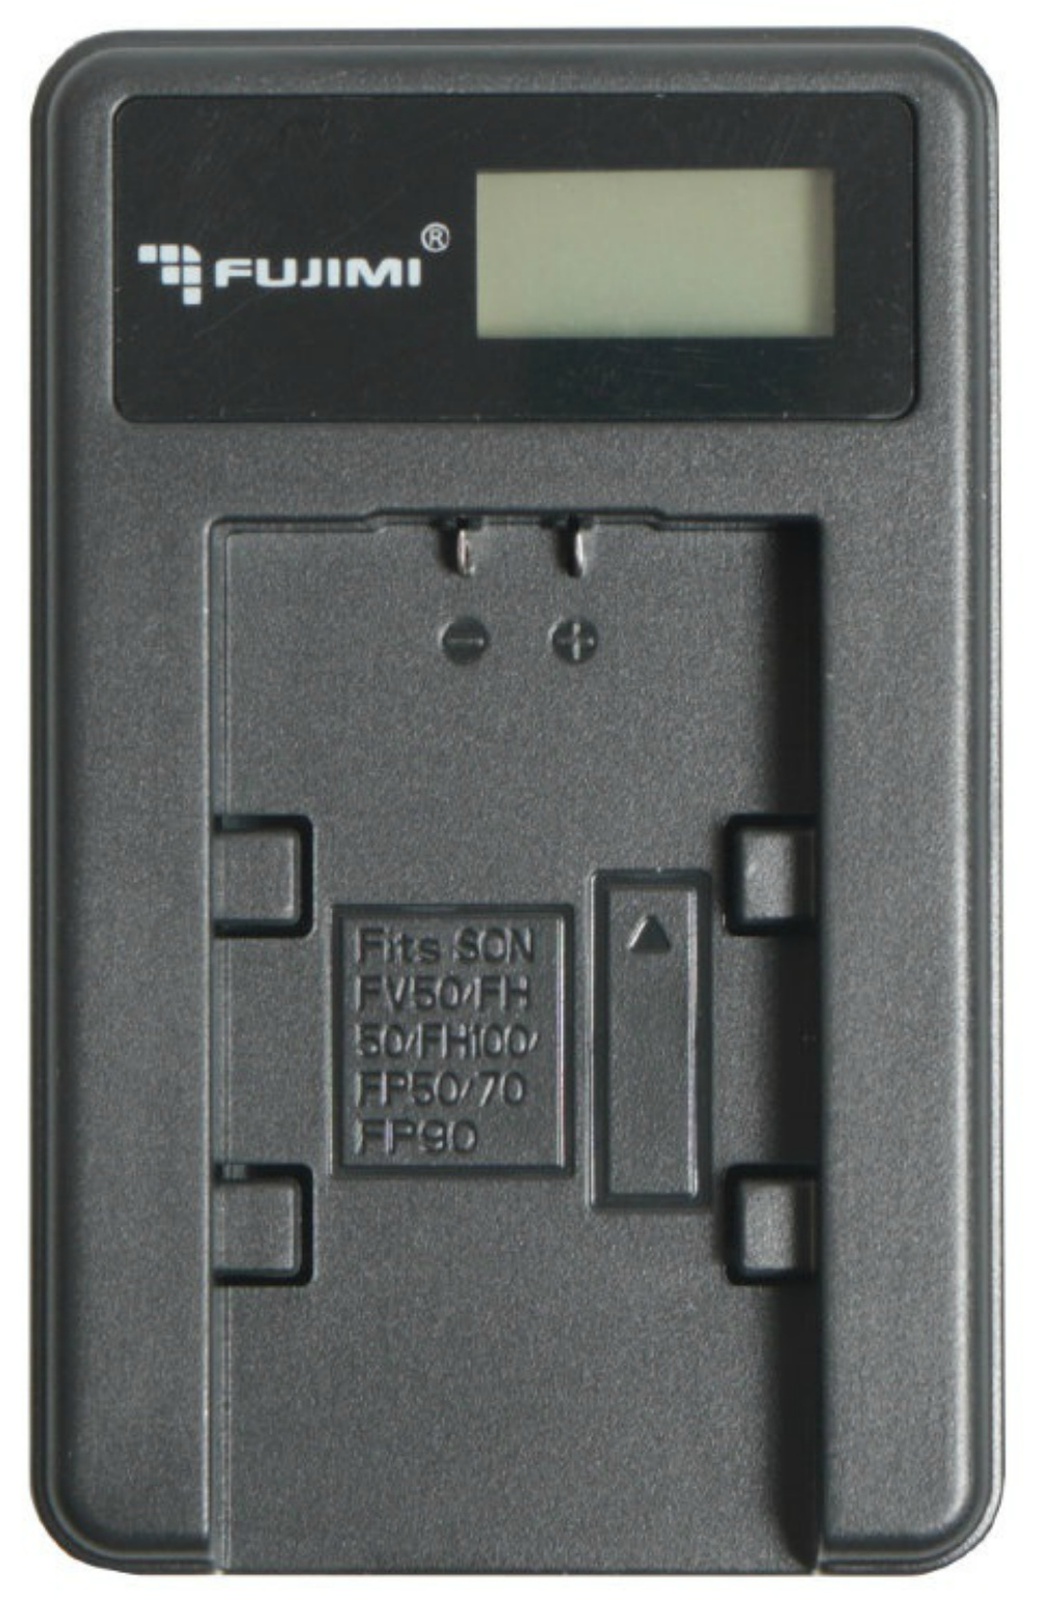 Зарядное устройство Fujimi UNC-ENEL23 + адаптер питания USB мощностью 5 Вт (USB, ЖК дисплей, система защиты) фото